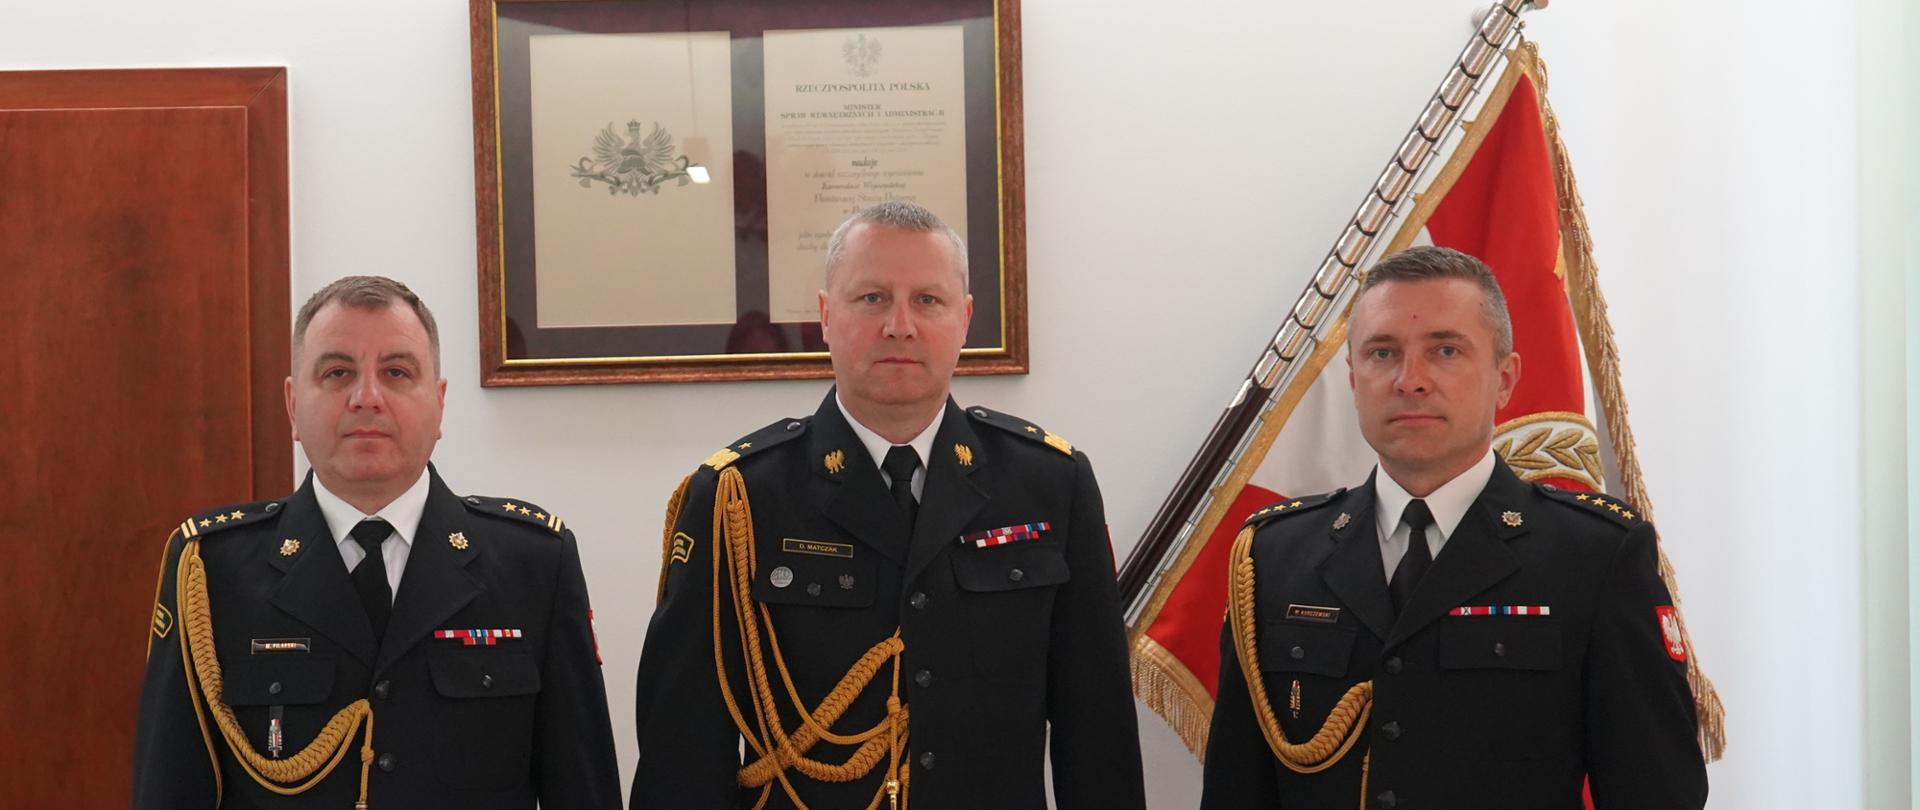 trzech strażaków w ciemnych mundurach ze sznurem stoi obok siebie, w tle sztandar